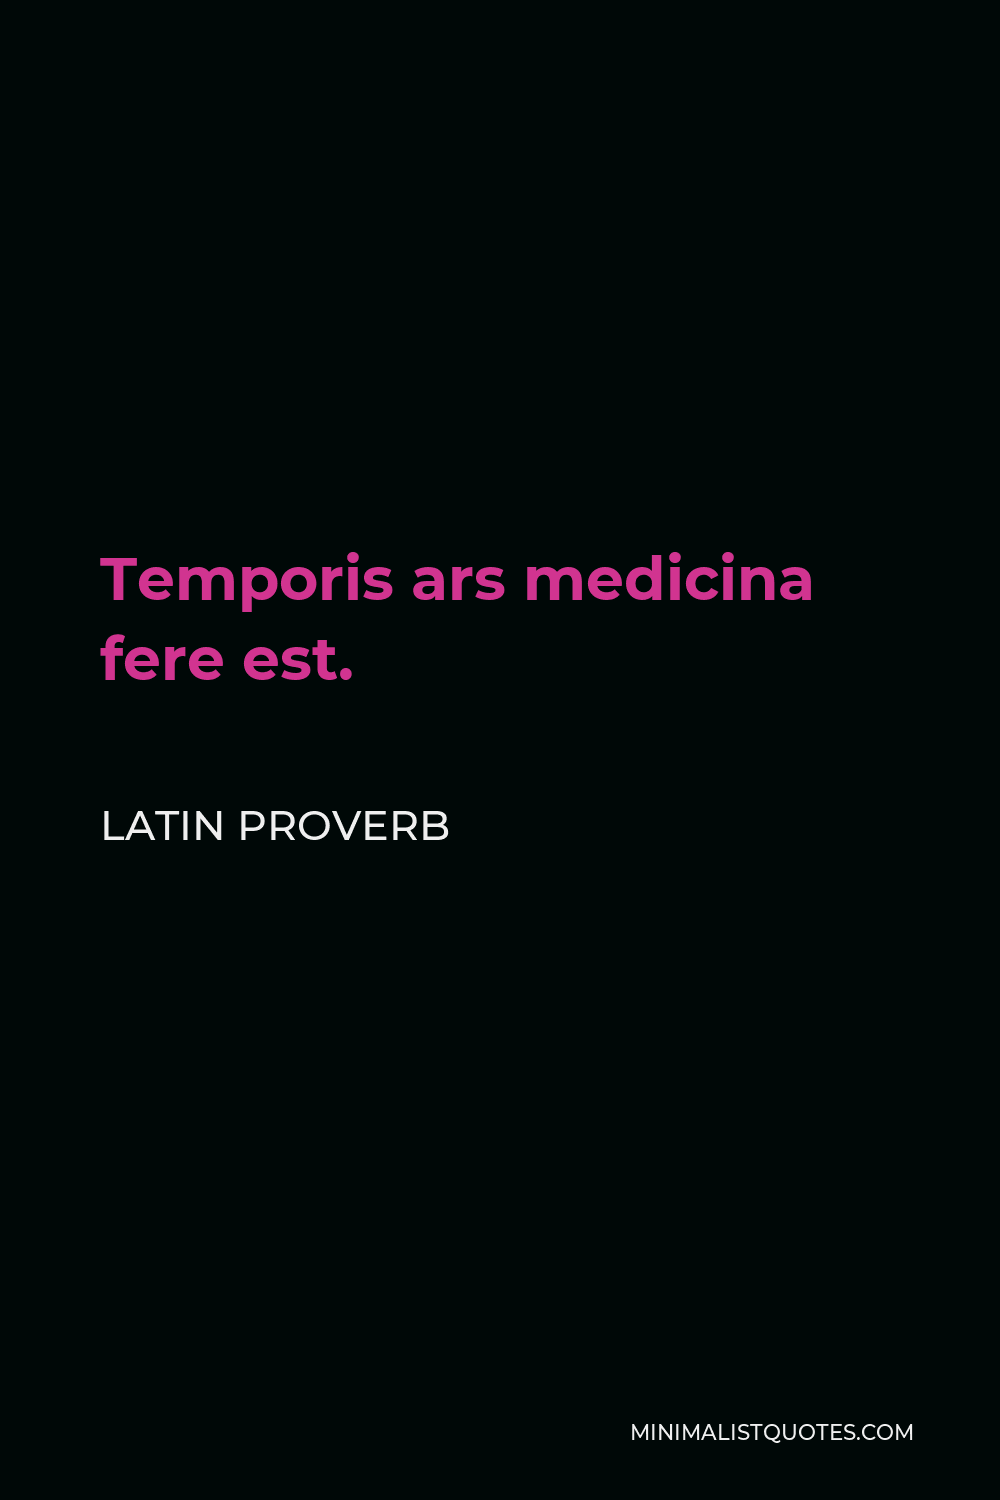 Latin Proverb Quote - Temporis ars medicina fere est.